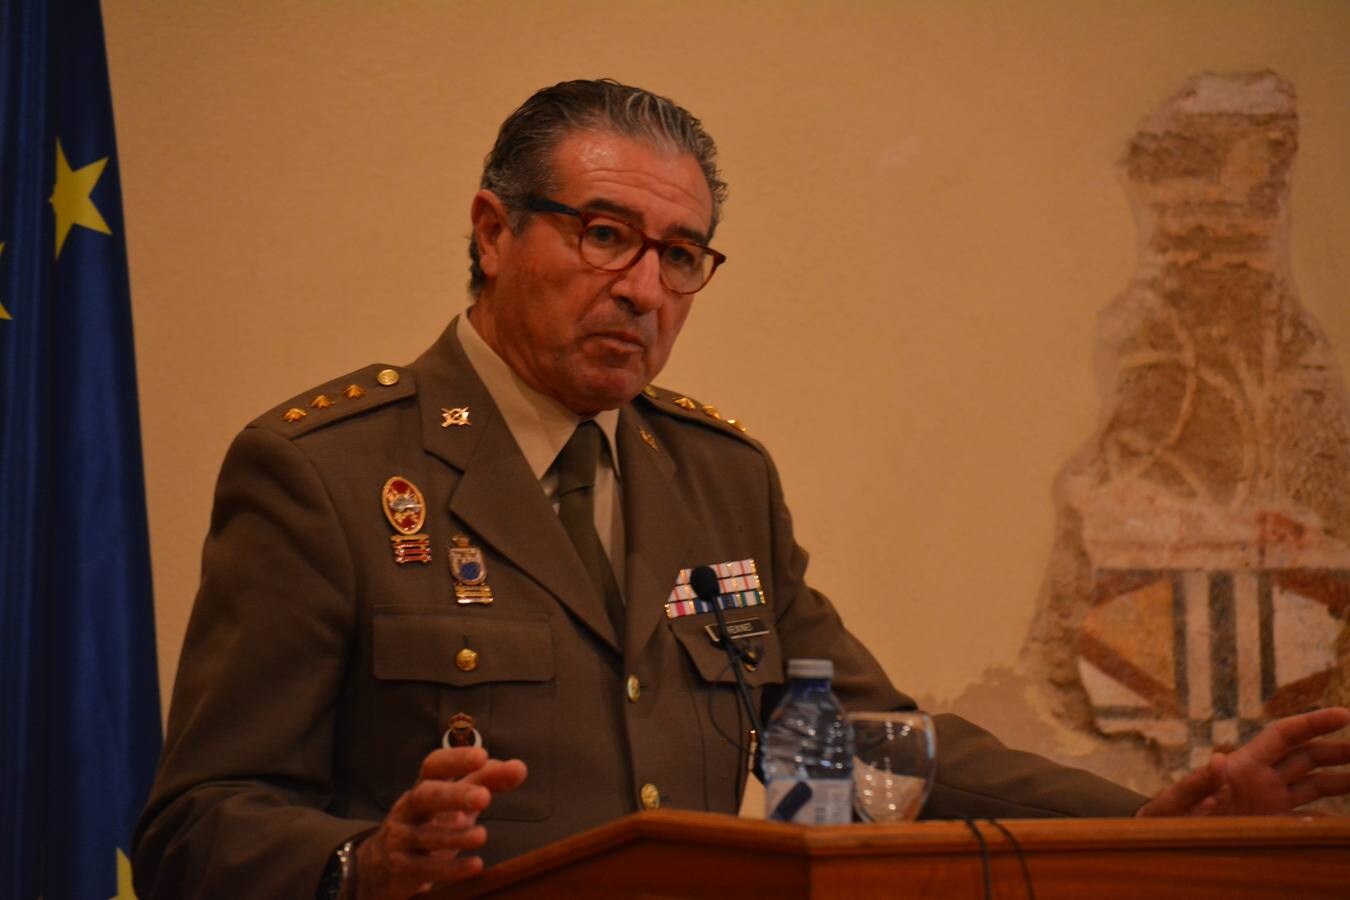 El Coronel Freixinet Imbroda durante su intervención en Fregenal de la Sierra. JUAN IGNACIO MÁRQUEZ